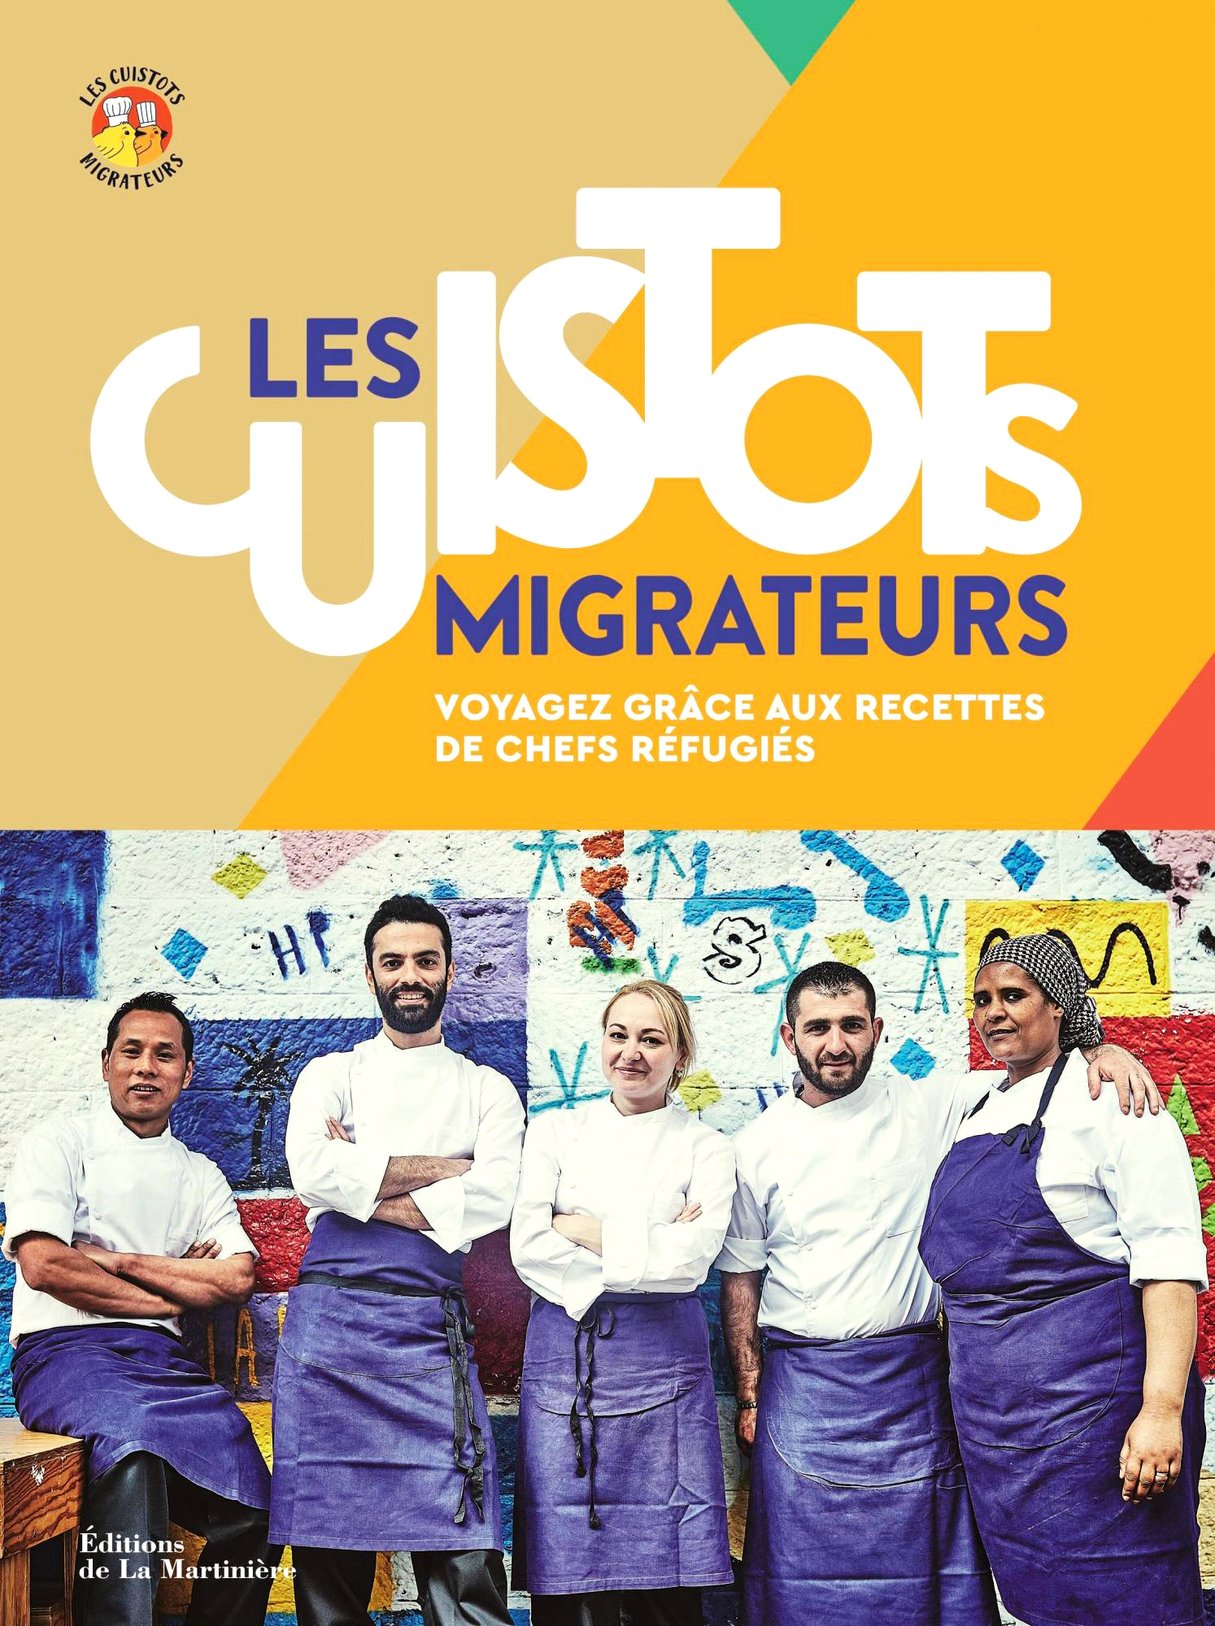 Les Cuistots migrateurs, d’Étiennette Savart, Éditions de La Martinière, 256 pages, 29 euros